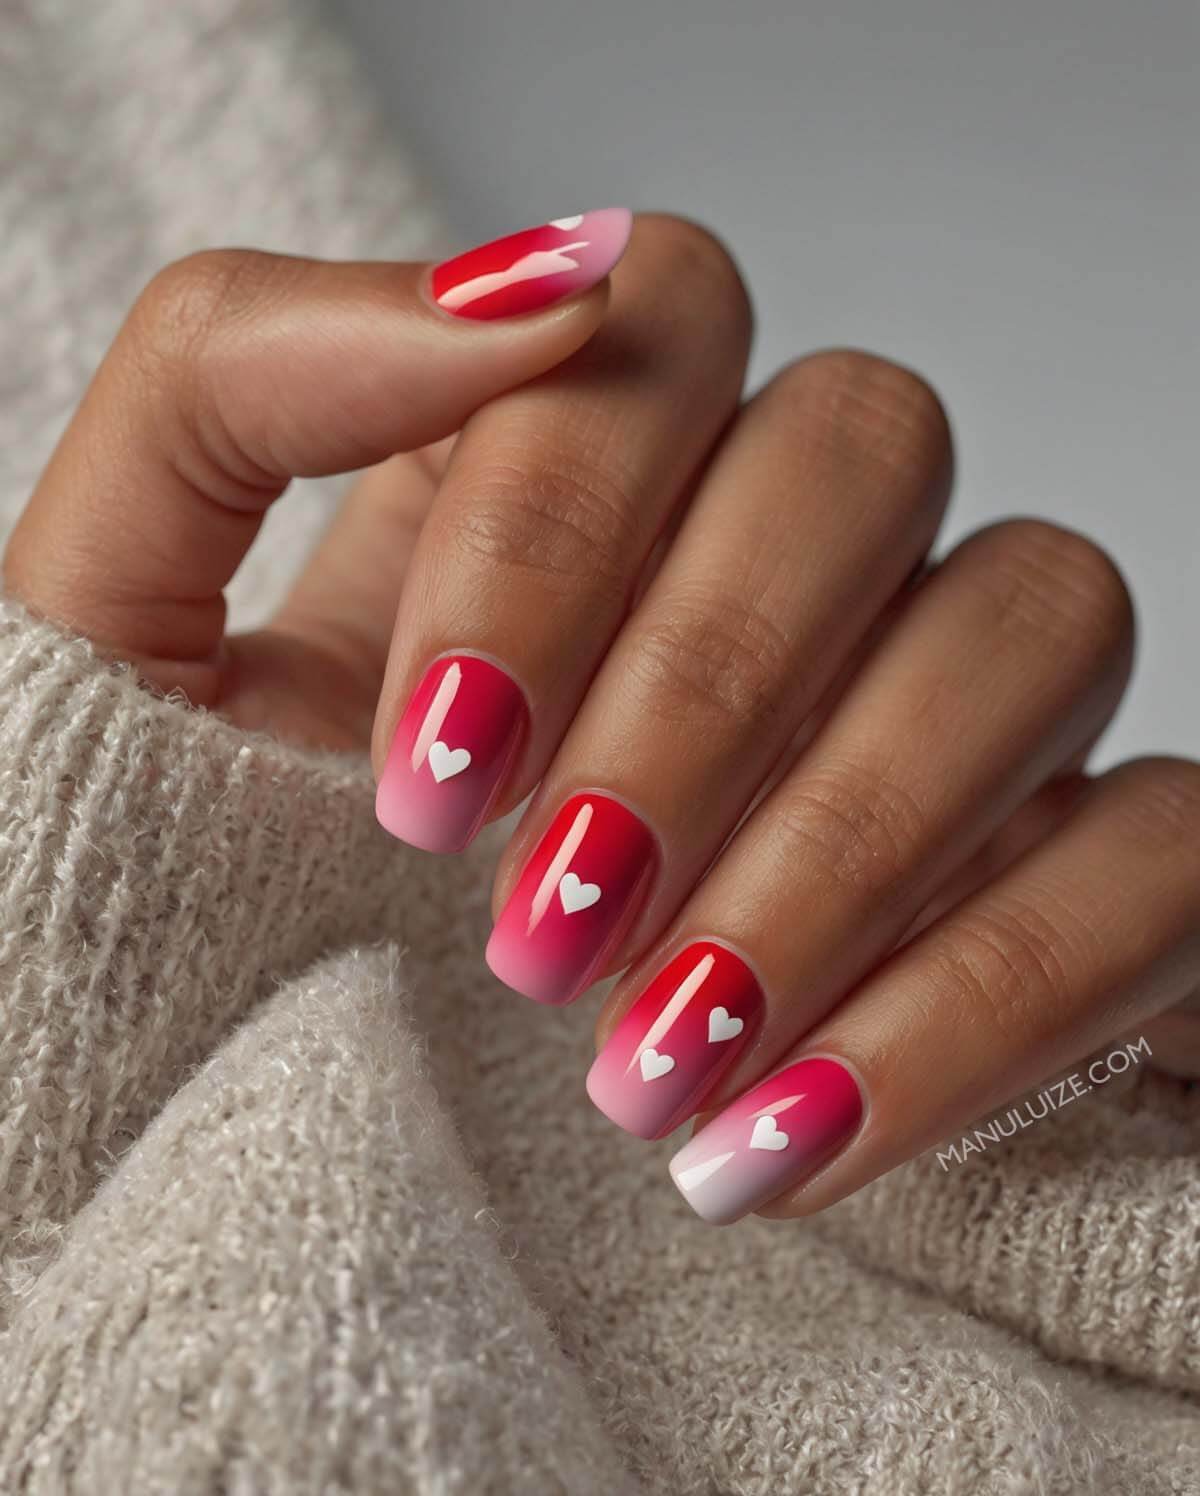 Pink ombré nails